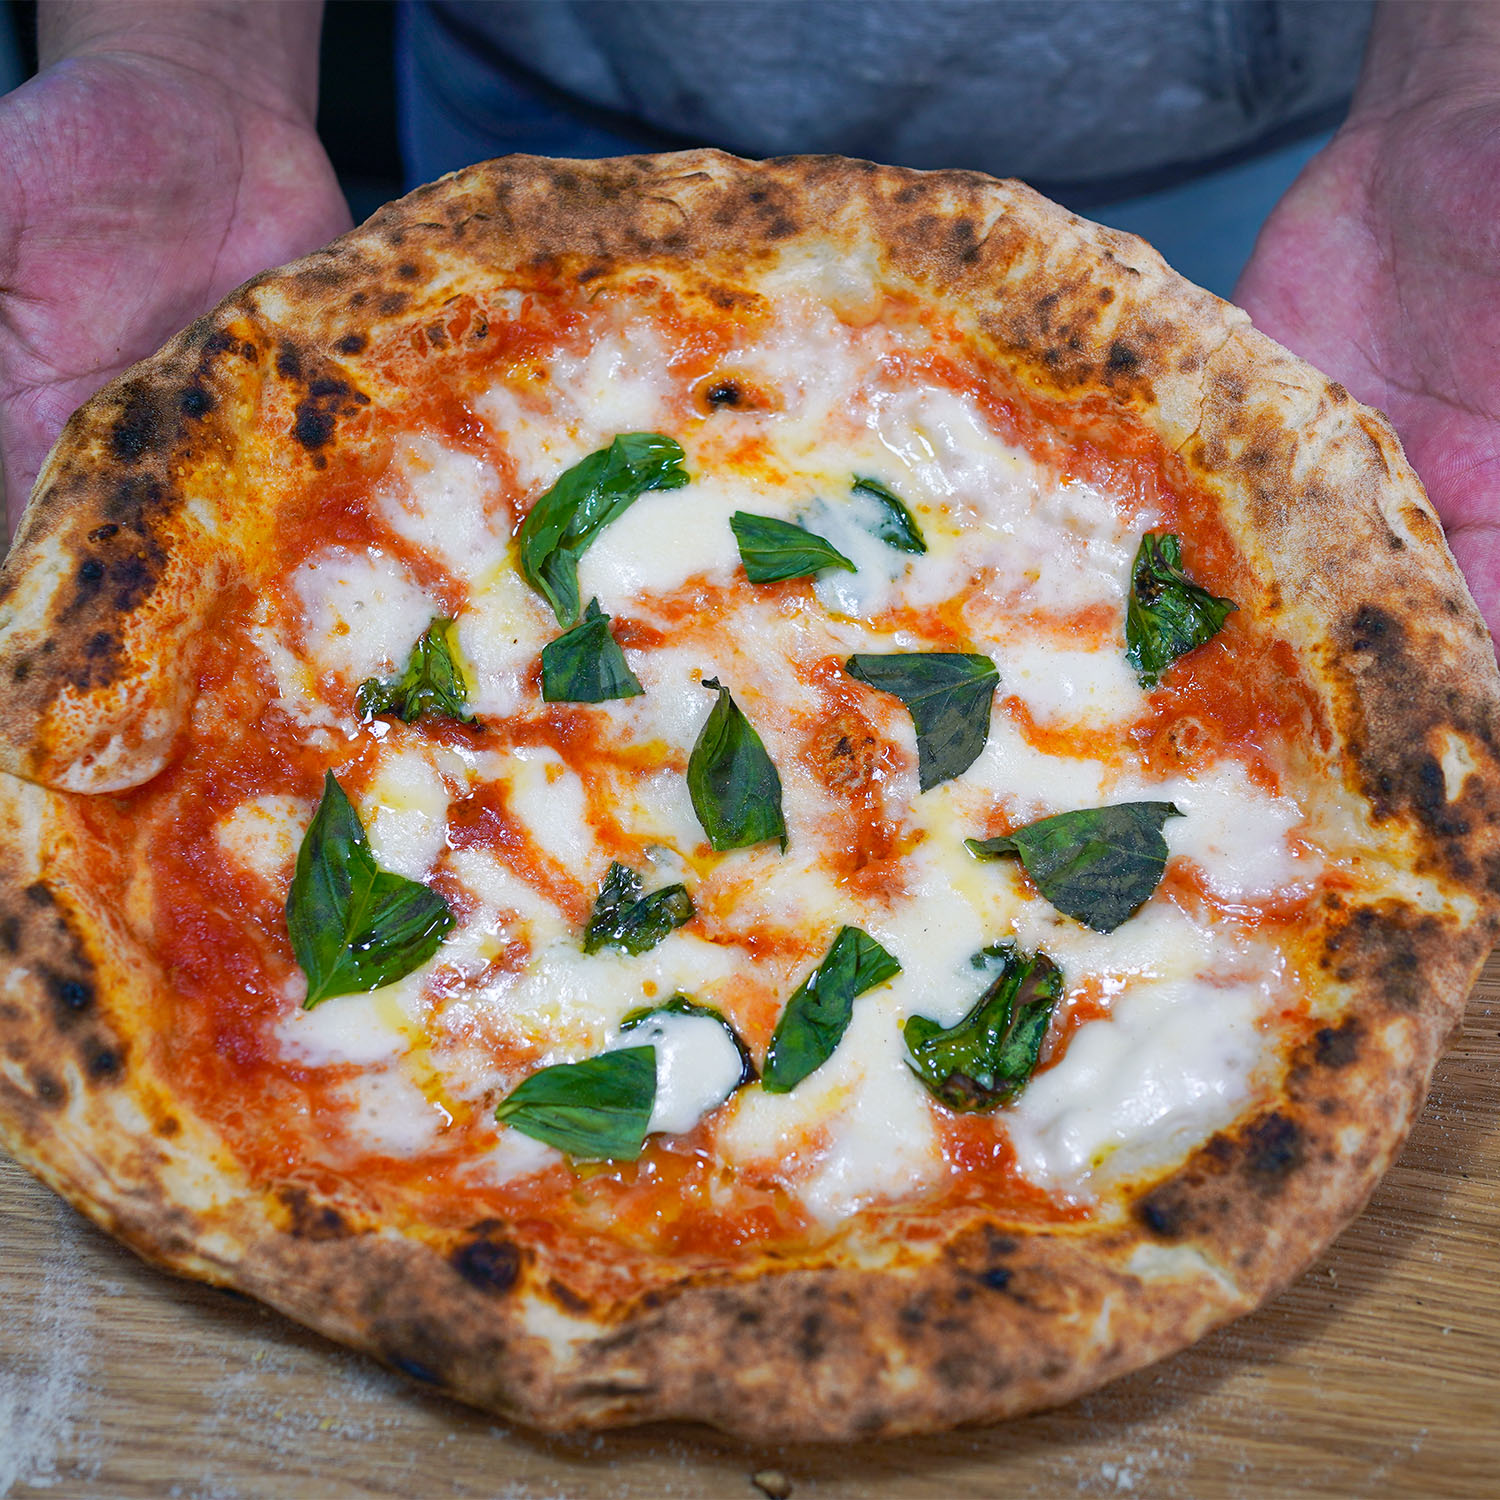 Di Napoli Pizza: Authentic Italian Flavor at Its Finest